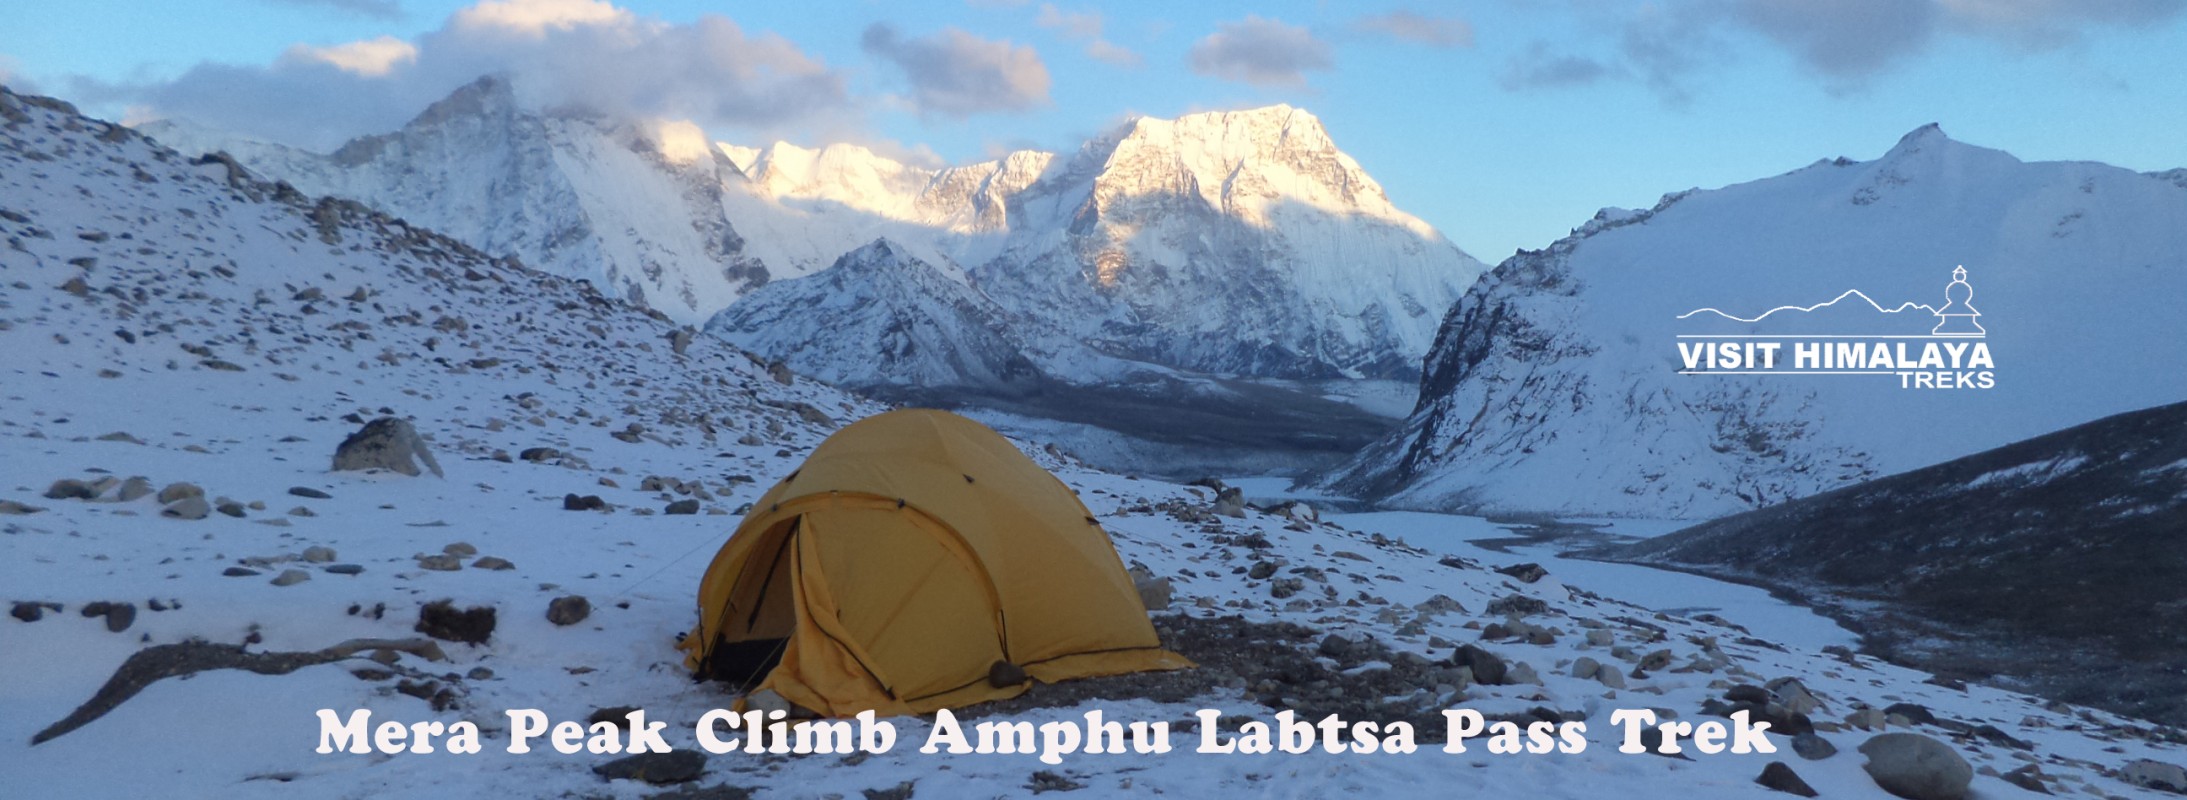  Mera Peak Climbing and Amphu Laptsa Pass 